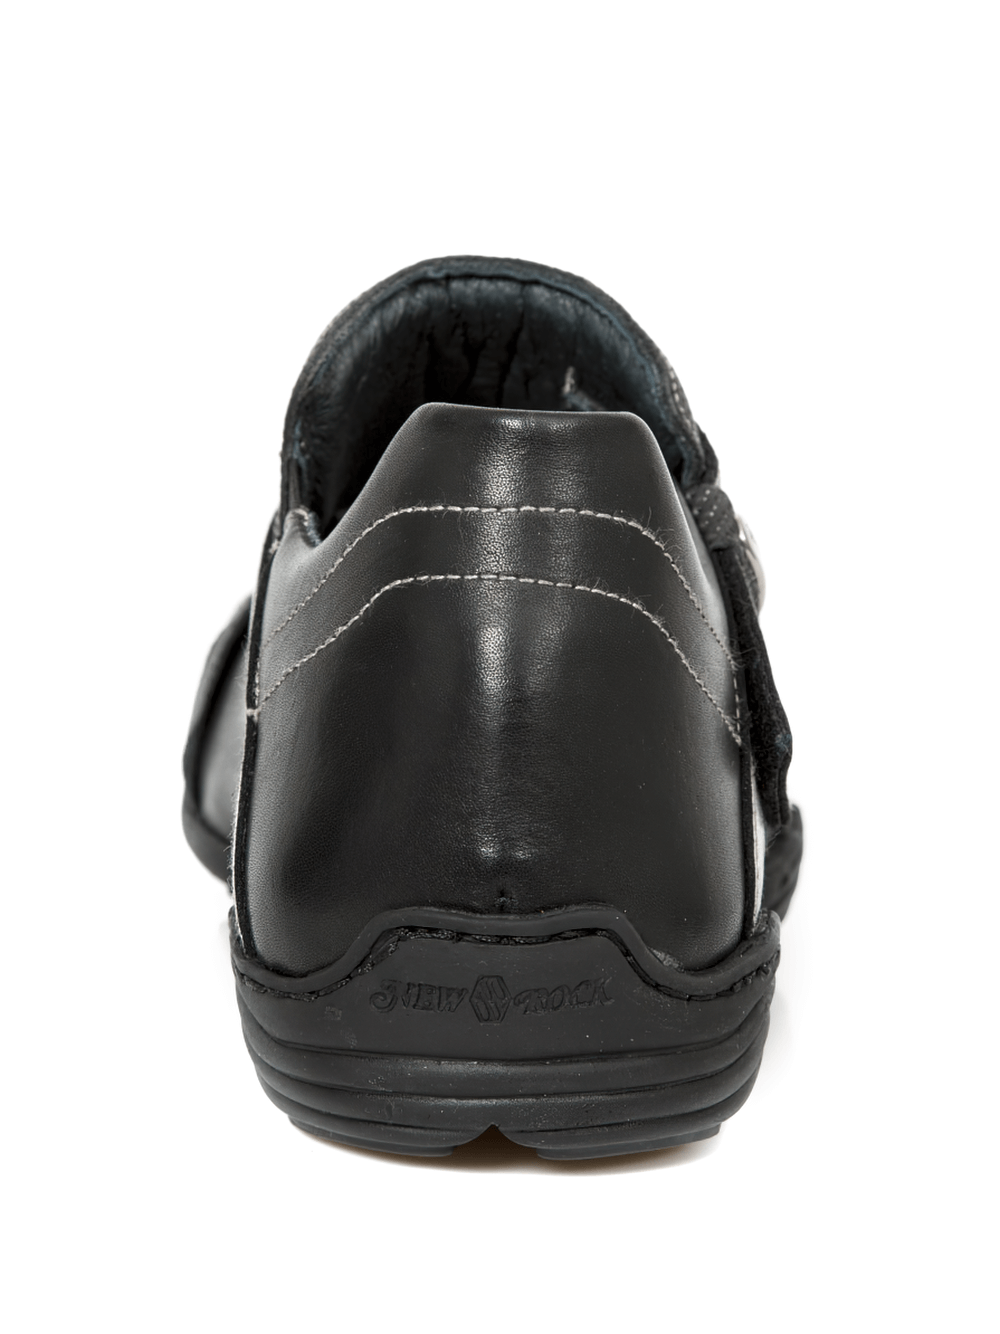 NEW ROCK Herren-Rock-Schuhe in Schwarz mit silbernem Klettverschluss